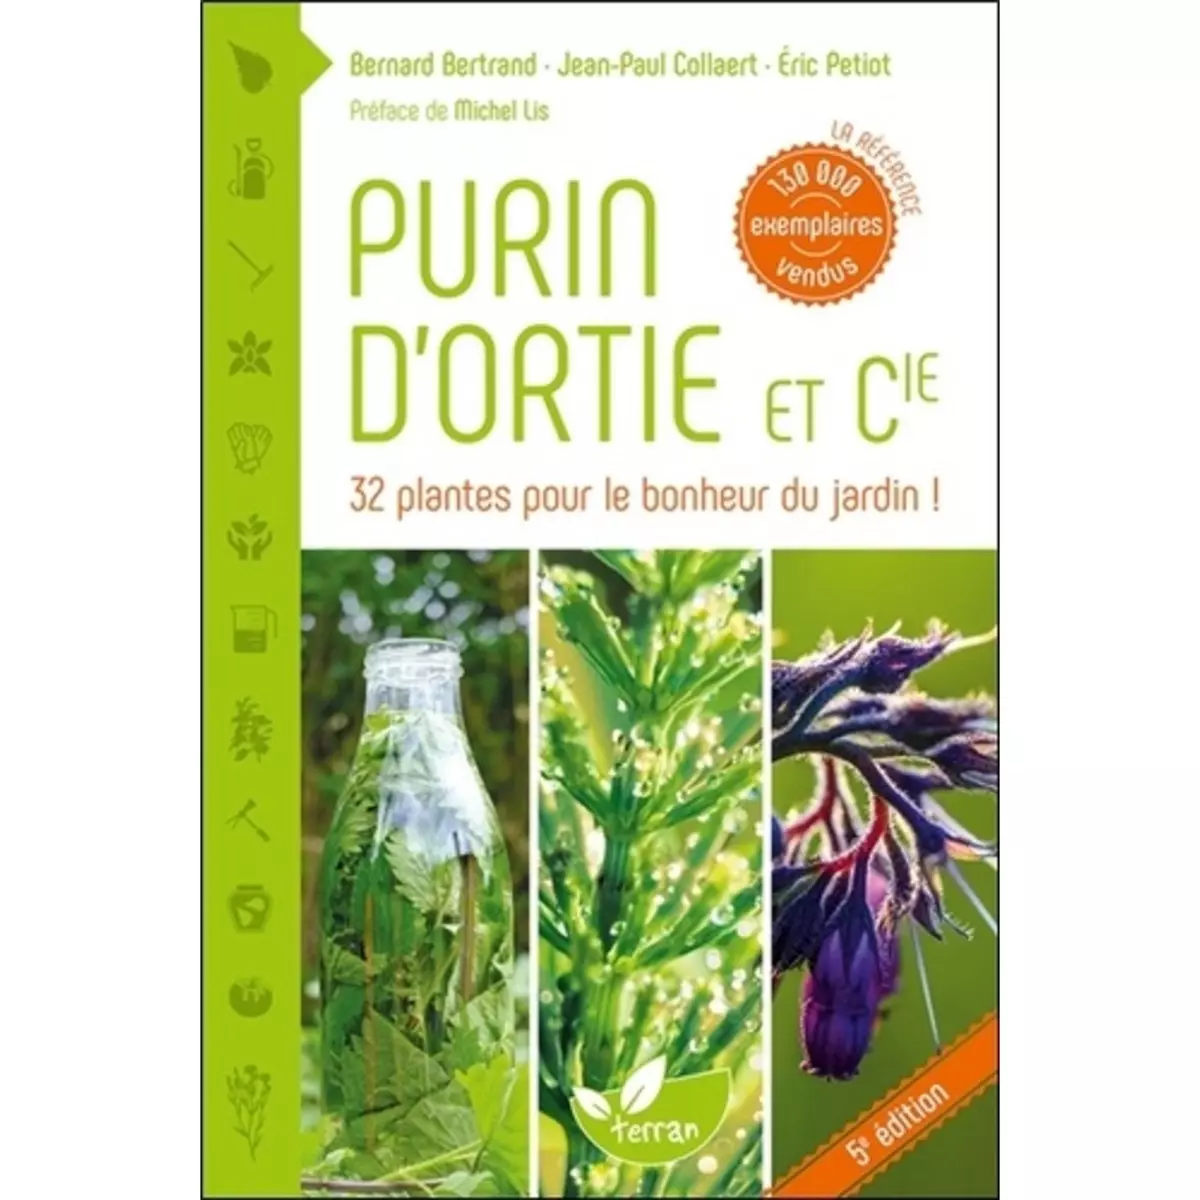  PURIN D'ORTIE ET COMPAGNIE. LES PLANTES AU SECOURS DES PLANTES, 4E EDITION, Bertrand Bernard